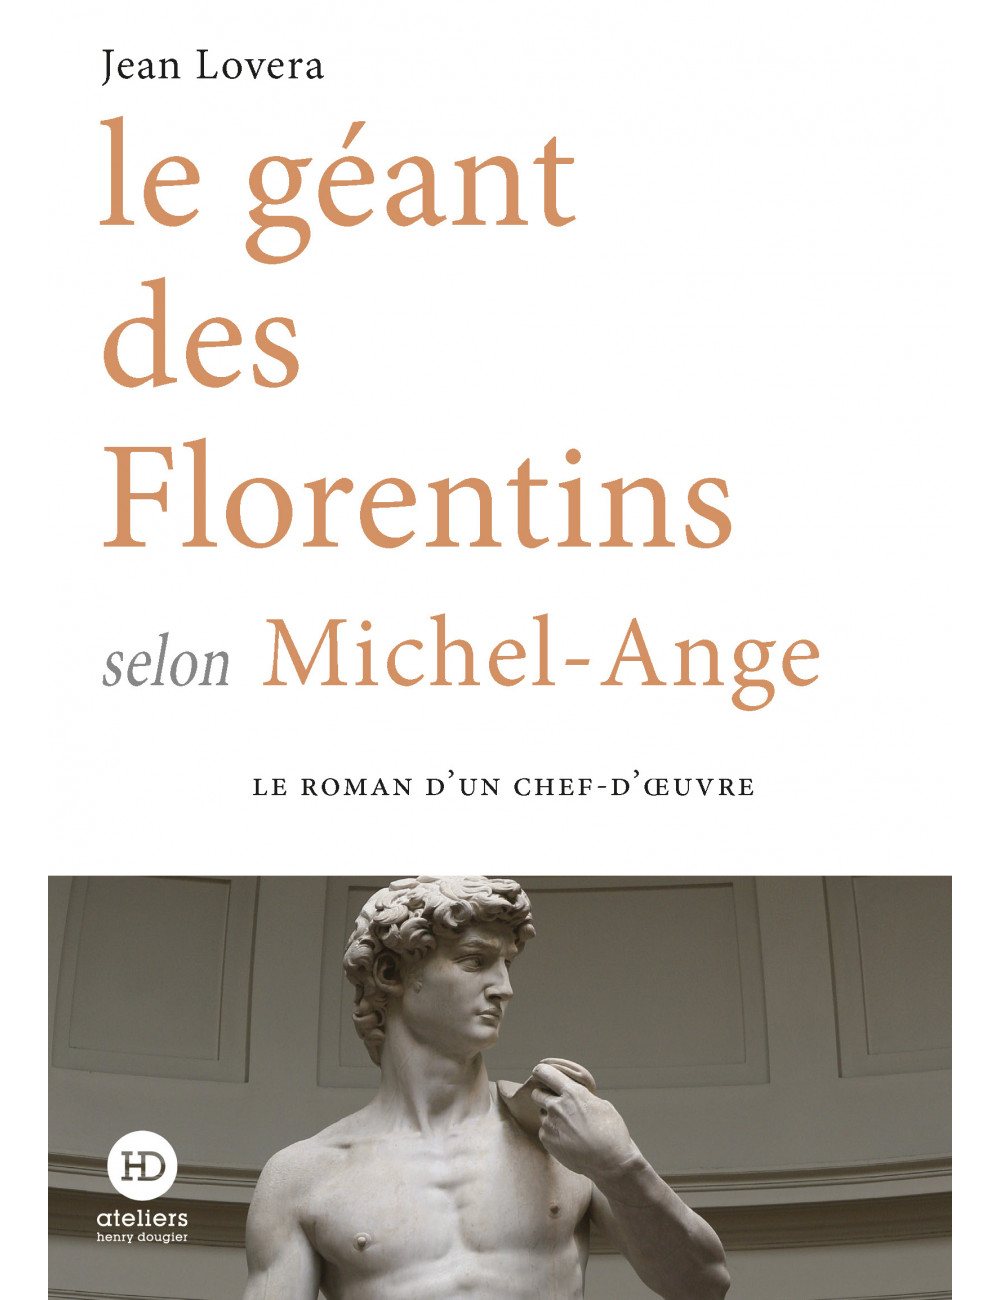 Le Géant des Florentins selon Michel Ange - Jean Lovera
 - Ateliers Henry Dougier